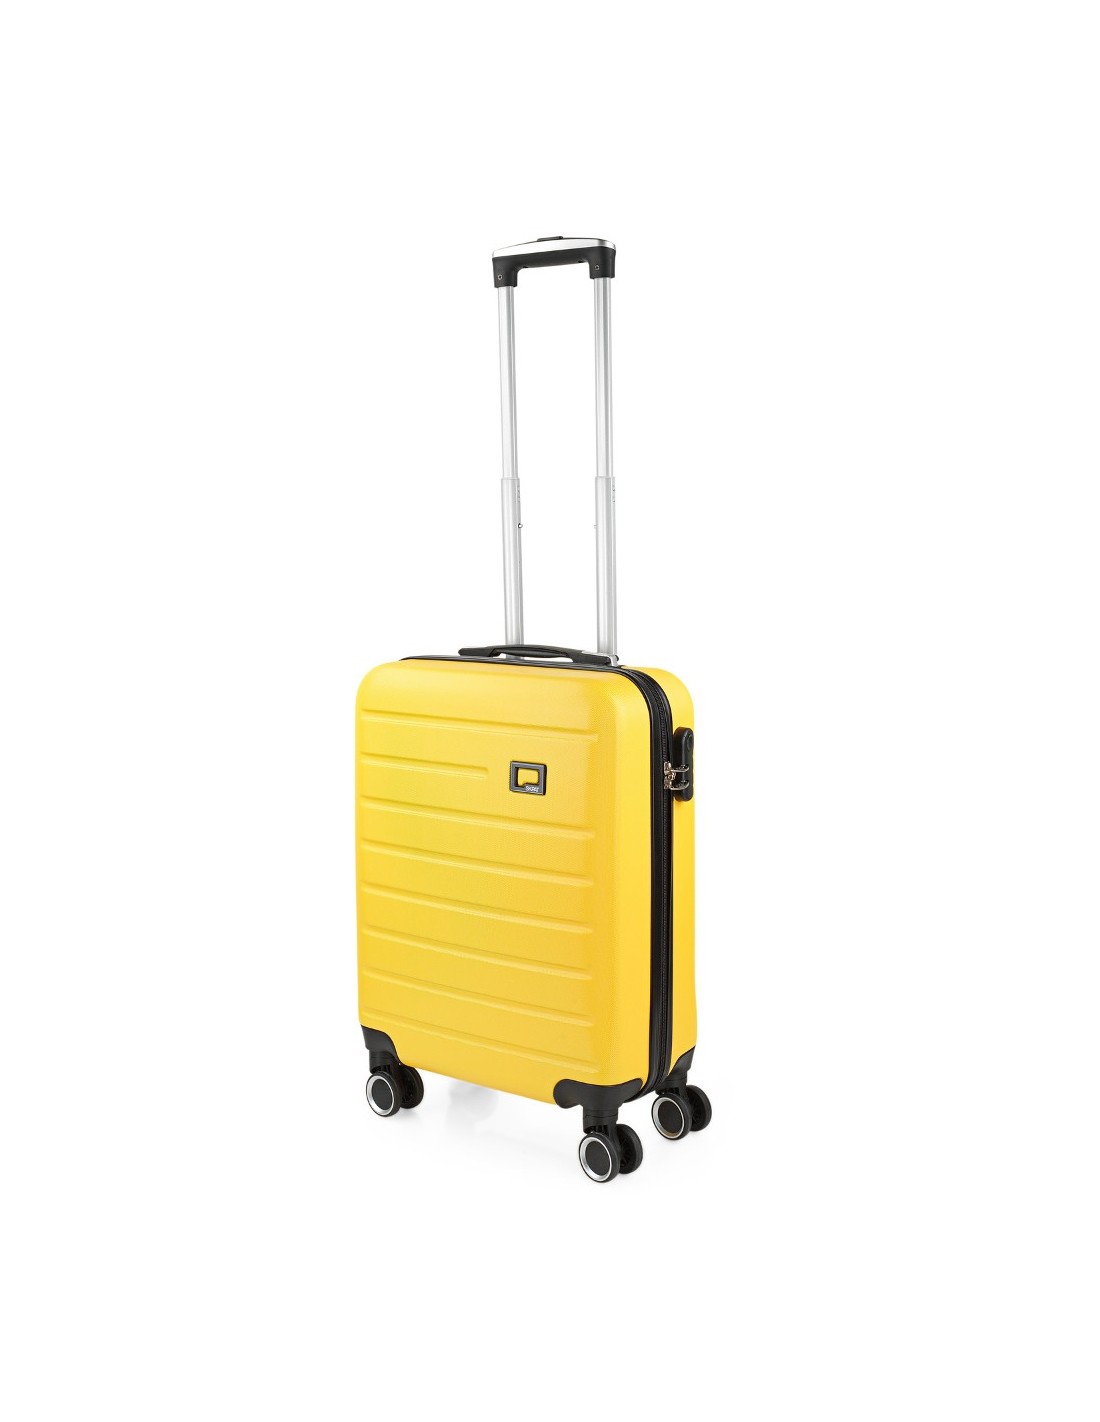 Encuentra tu maleta low cost ideal para una escapada de fin de semana